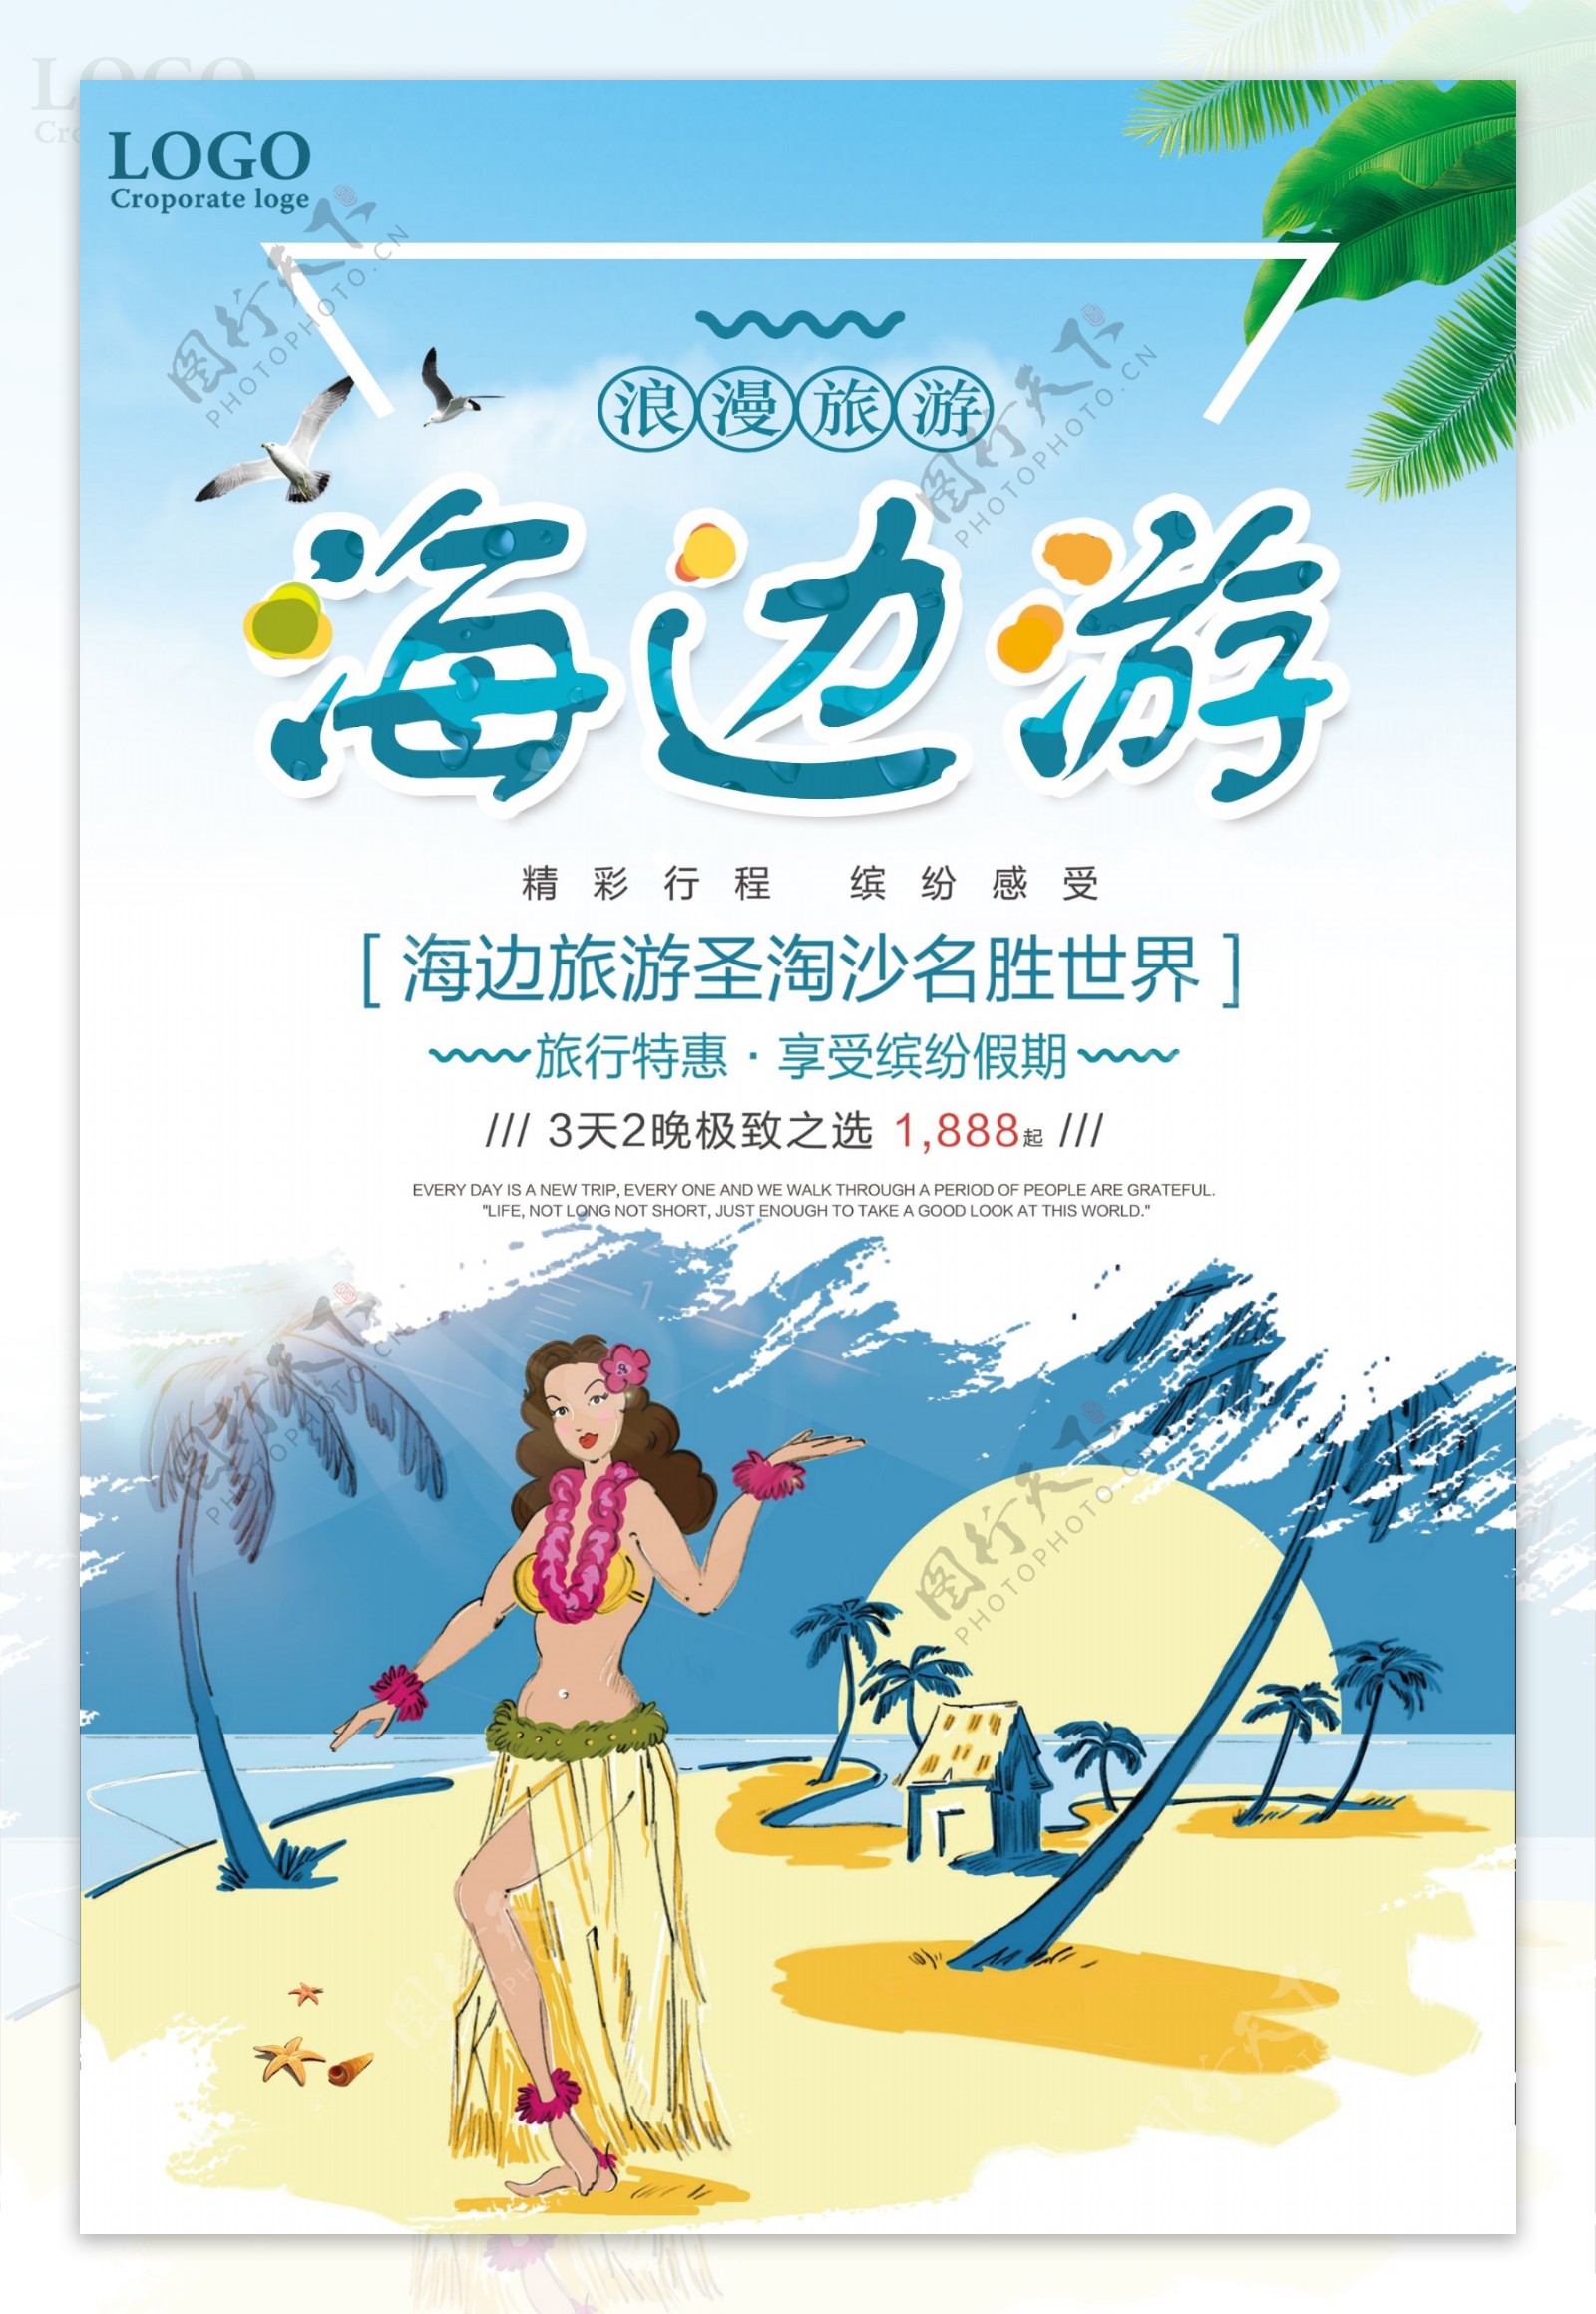 海边游旅行特惠促销海报设计